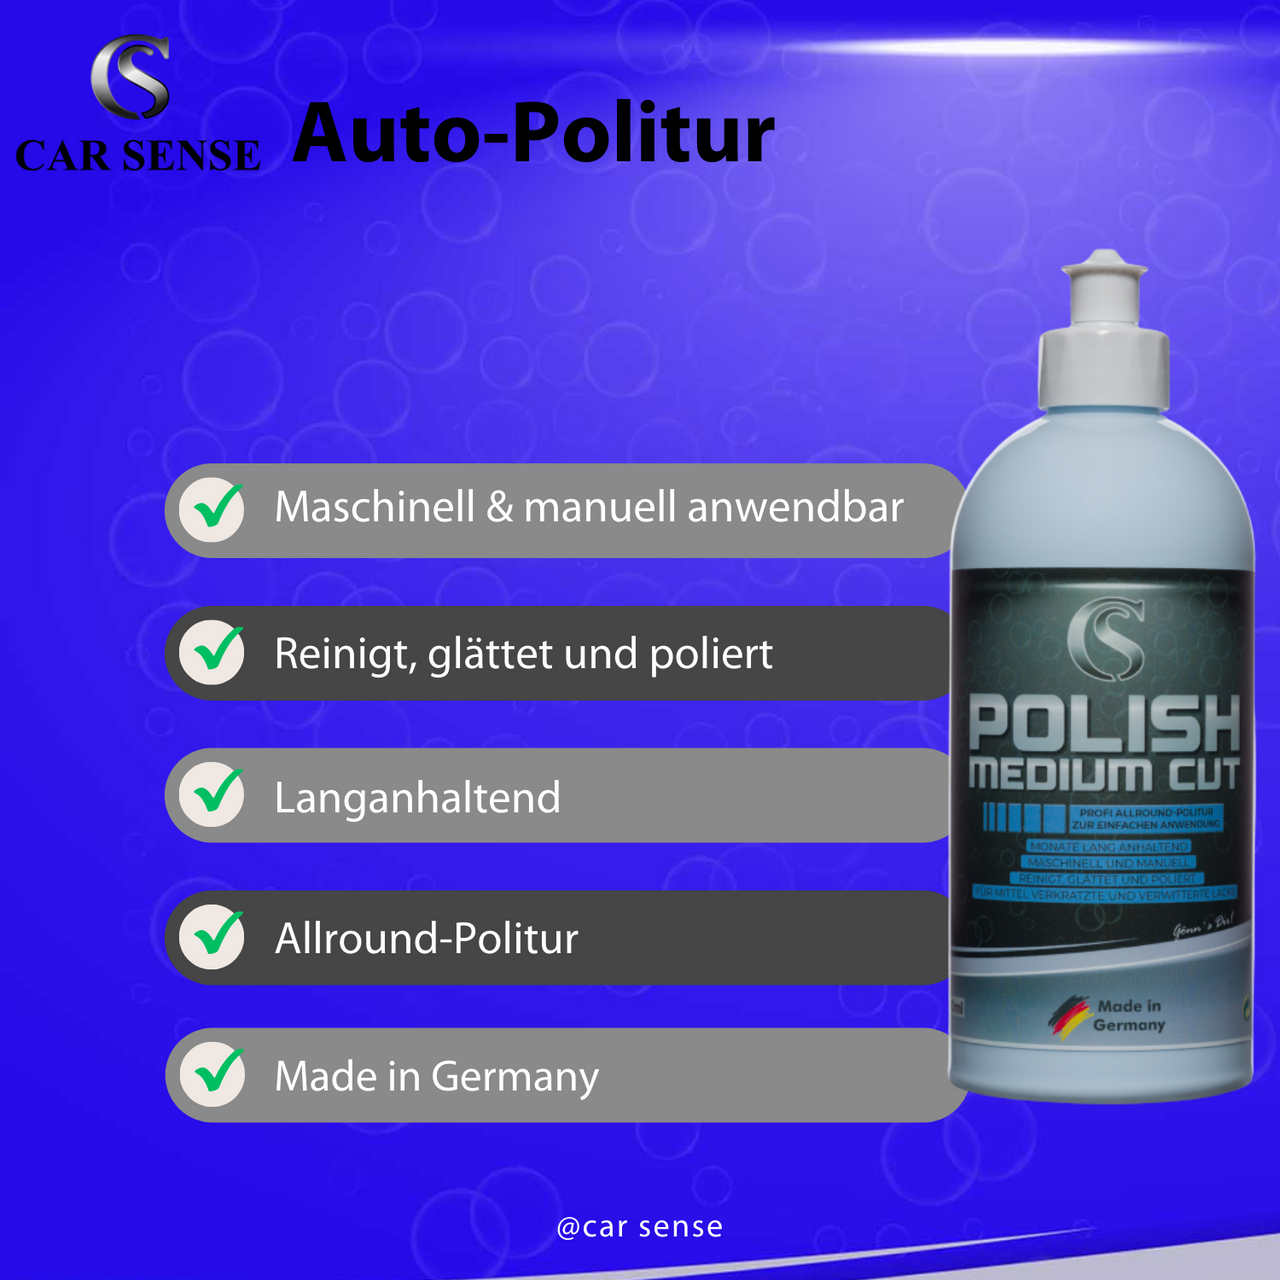 Car Sense Polish Medium Cut Hochwertige 1-Step Politur und Schleifpaste | Entfernt mittlere Kratzer und Hologramme | Hohe Abtragung und langanhaltender Glanz | Für alle Lackarten geeignet